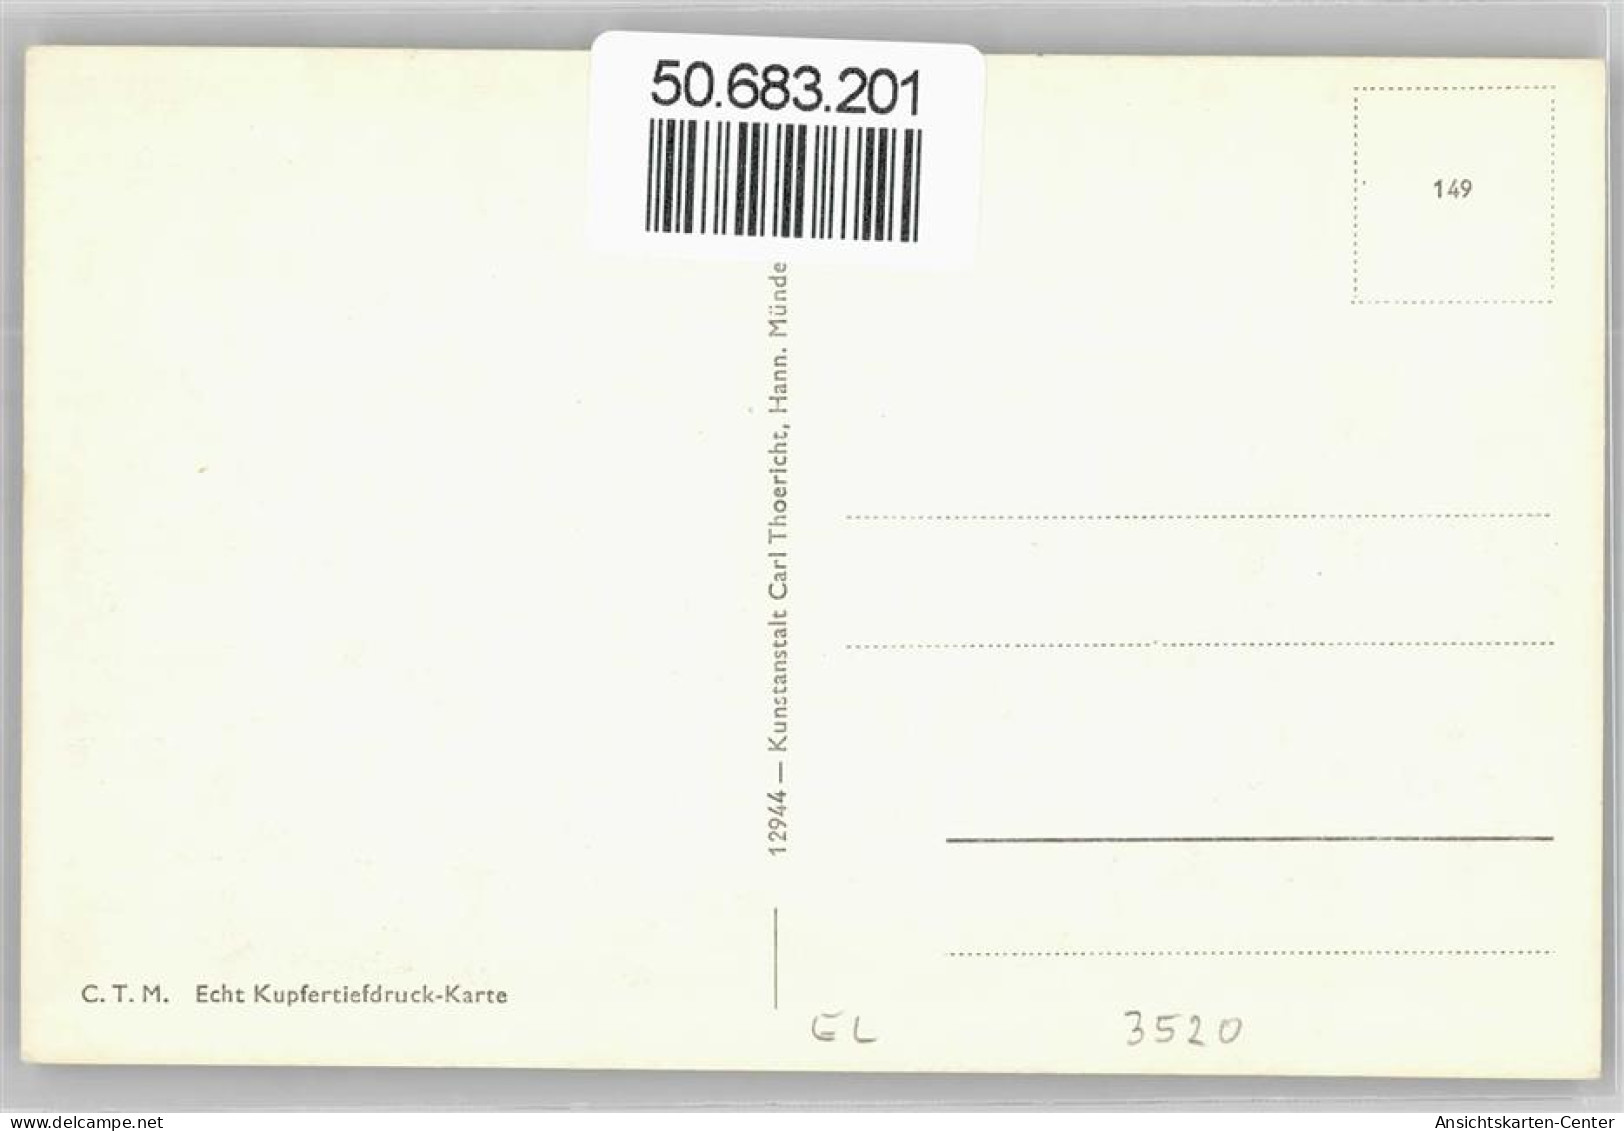 50683201 - Hofgeismar - Hofgeismar